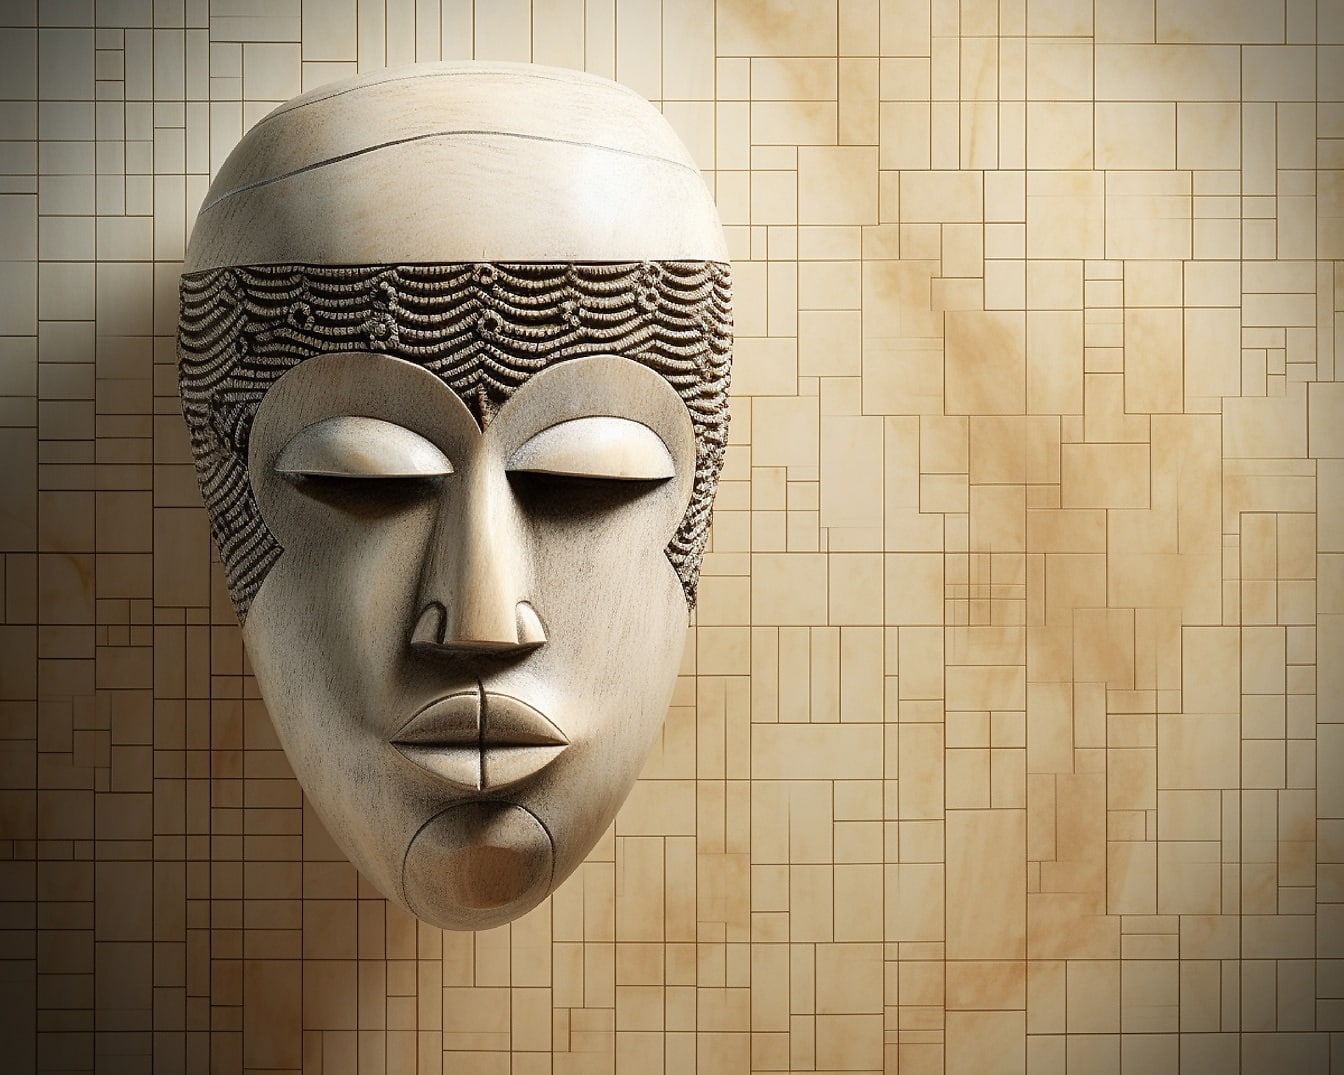 Μάσκα προσώπου απόδοσης γραφικών αντικειμένων μοντέλου 3D